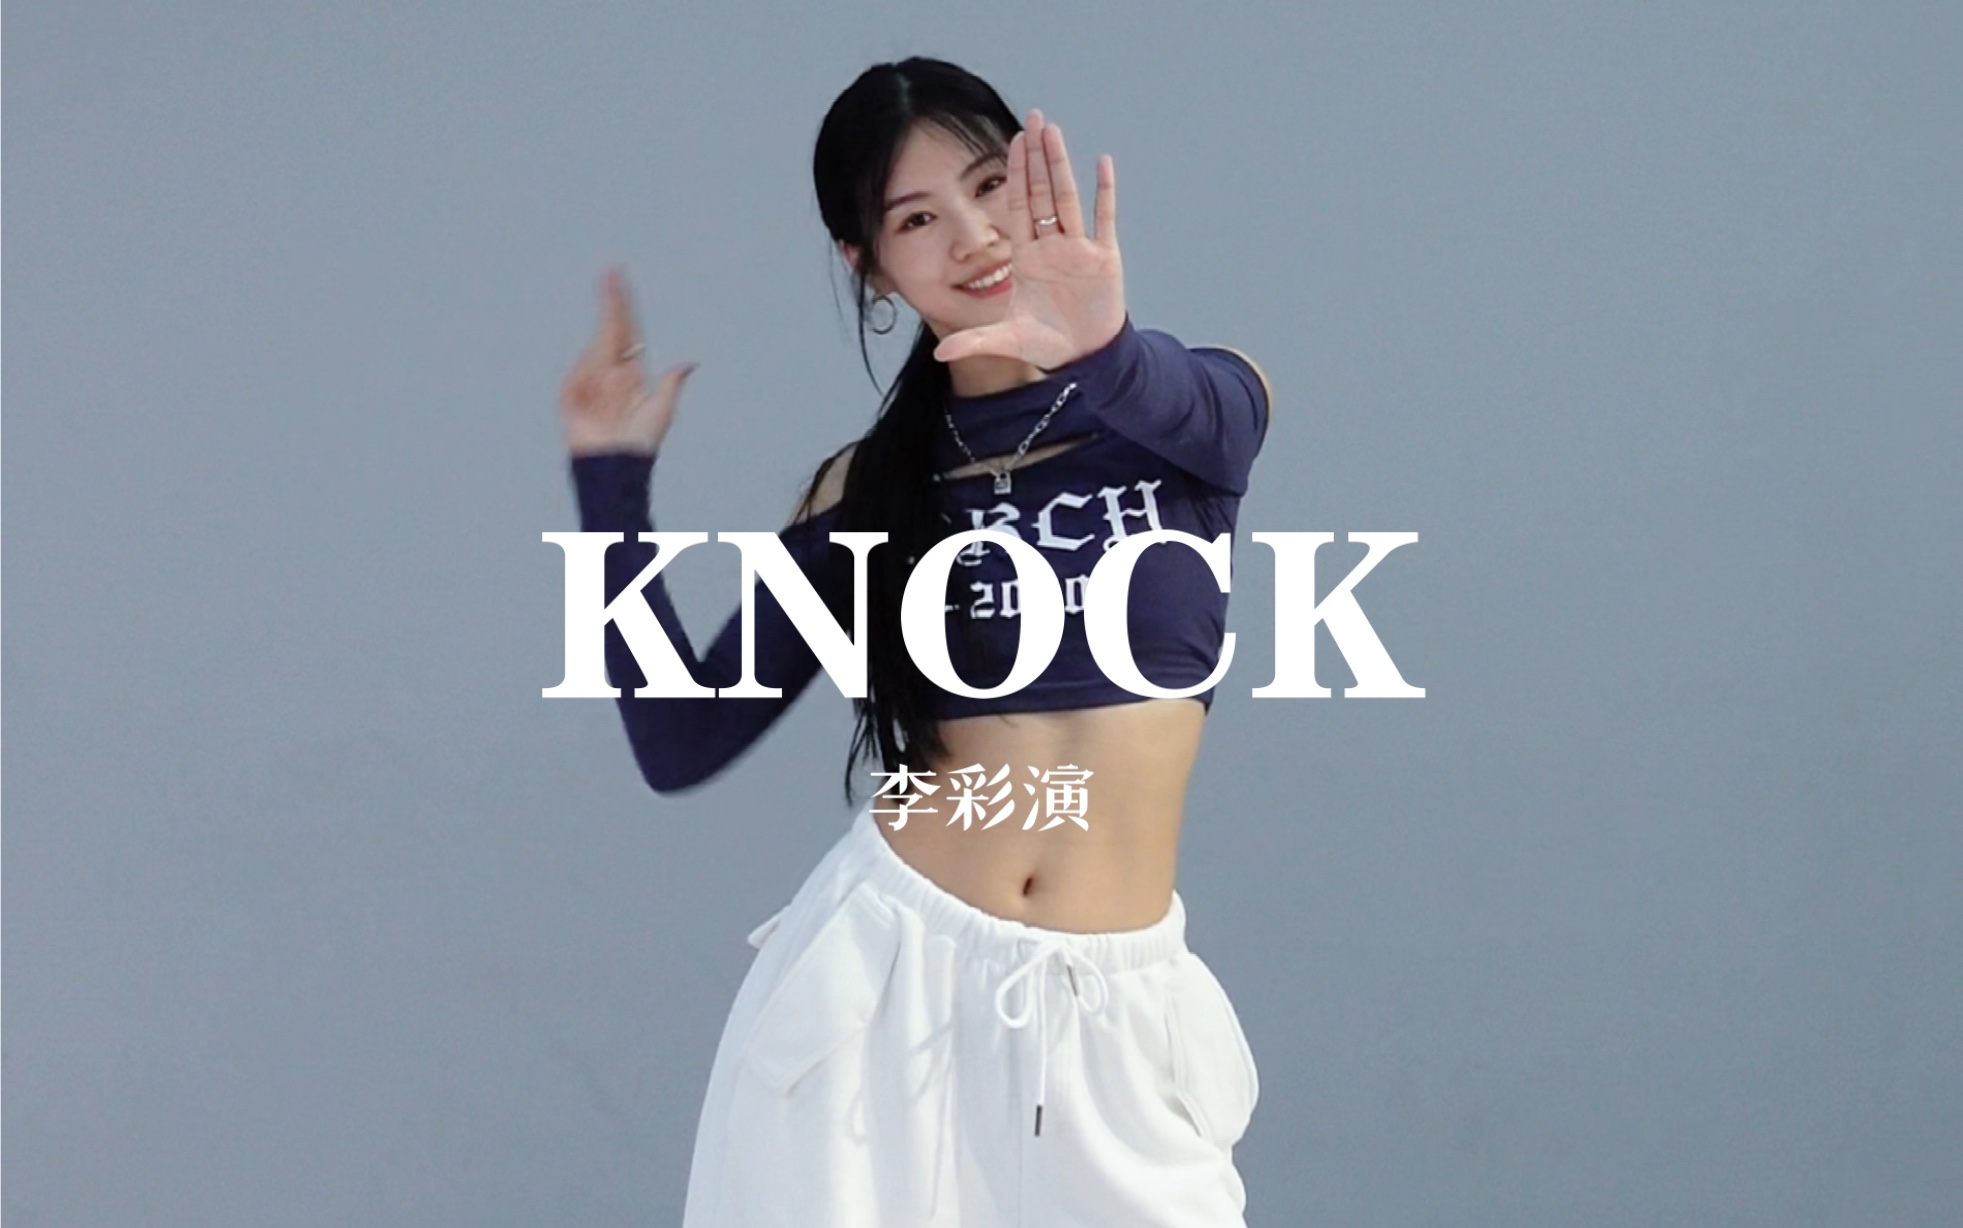 【糖糖翻跳】KNOCK——李彩演 dancebreak真的跳得很爽